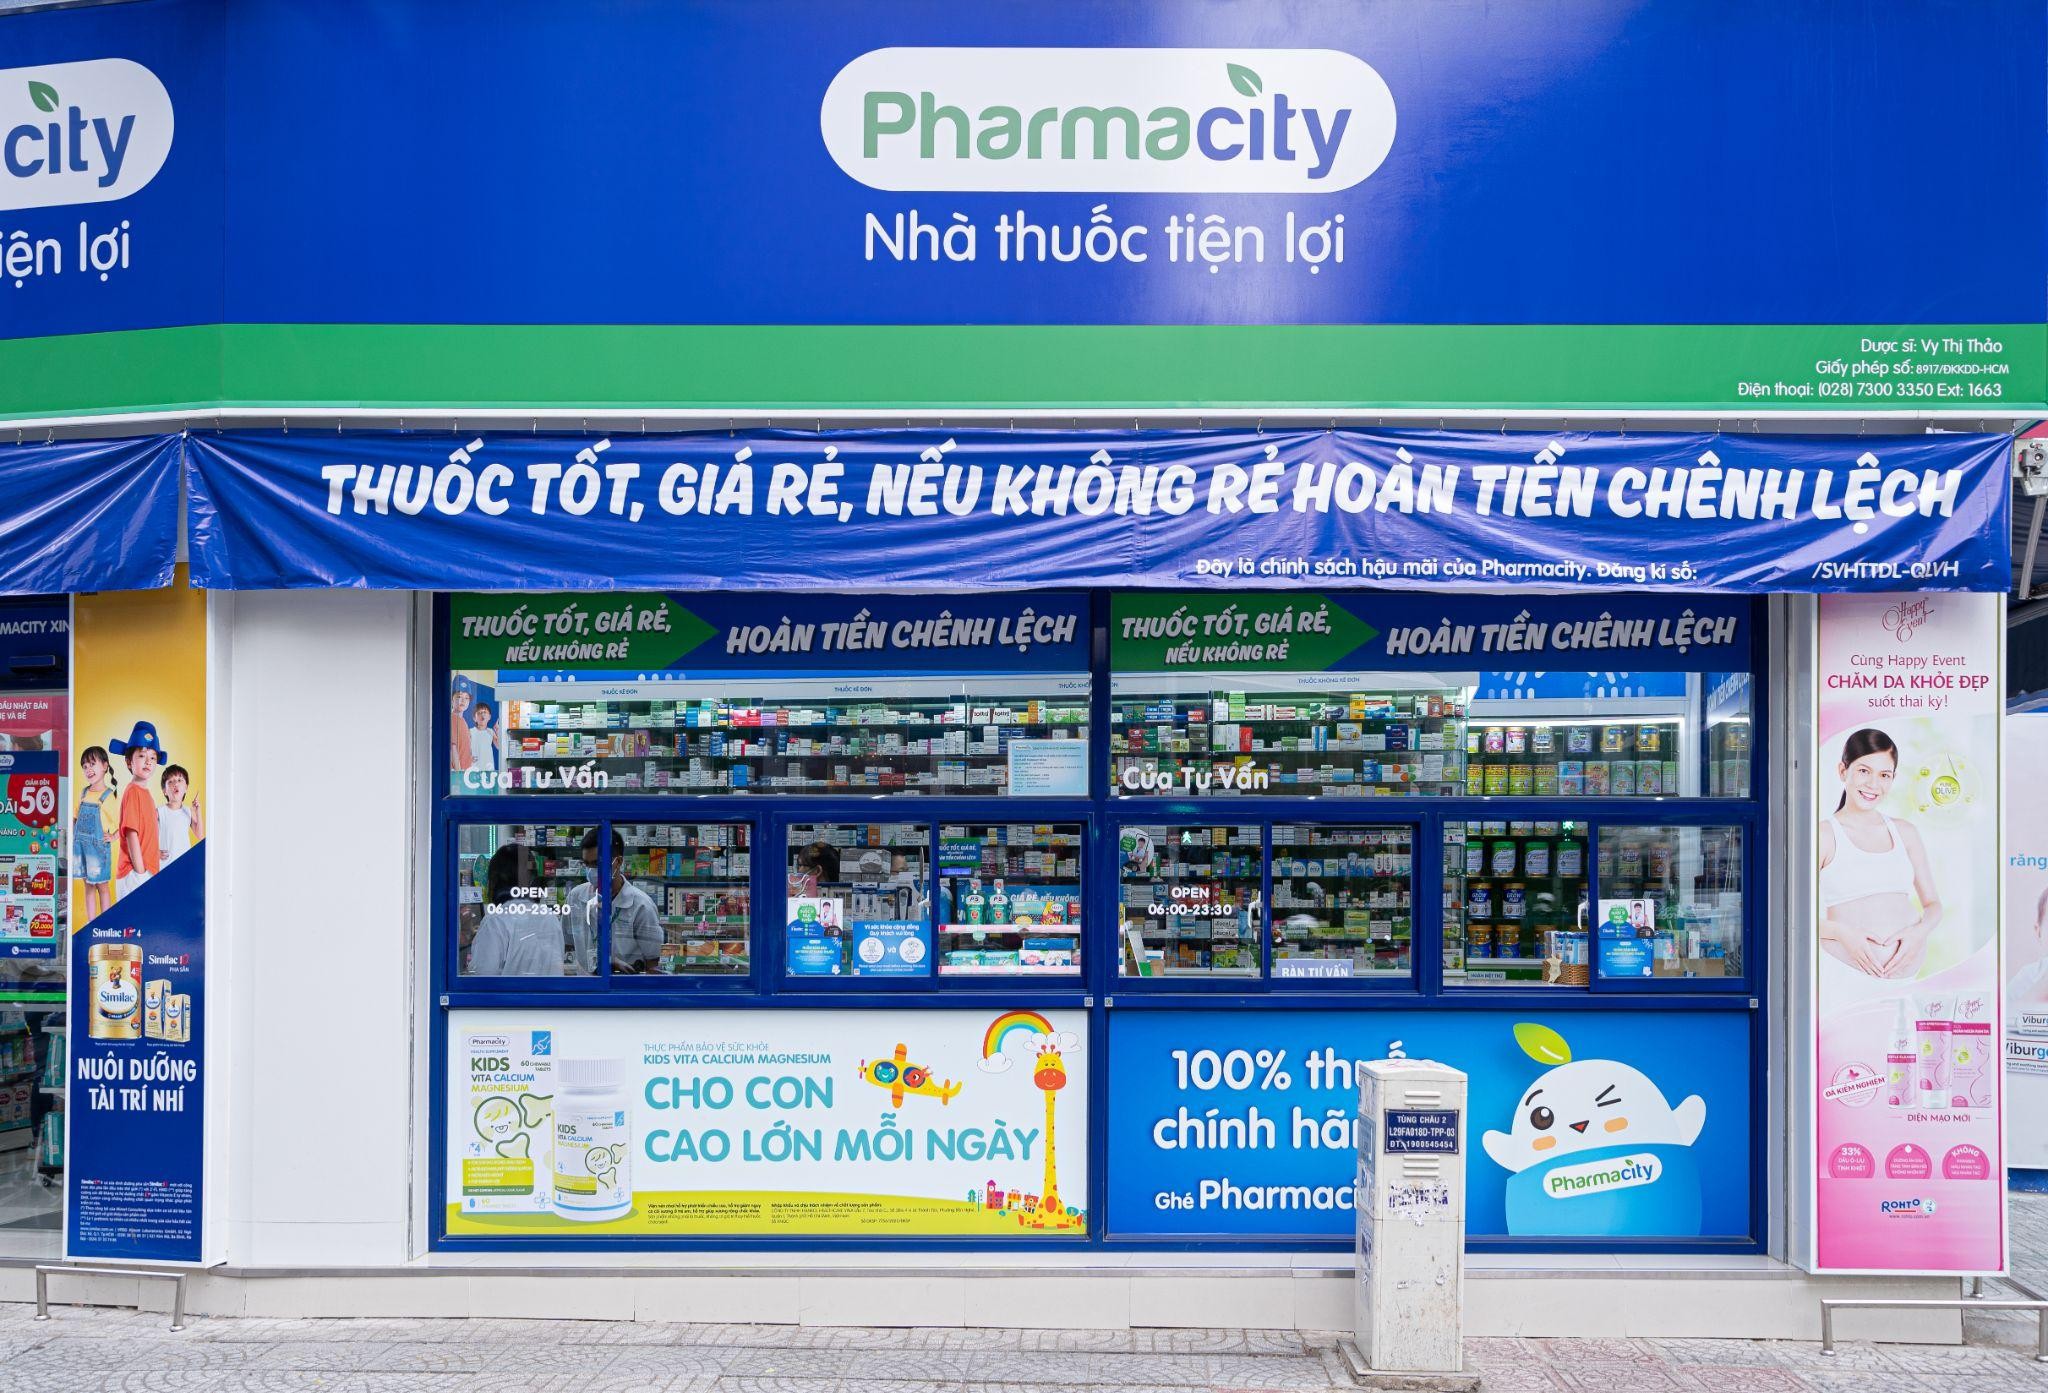 
Chuỗi nhà thuốc Pharmacity được thành lập vào năm 2012, đến năm 2019 thì chuỗi Pharmacity được Mekong Capital bắt đầu tài trợ vốn
